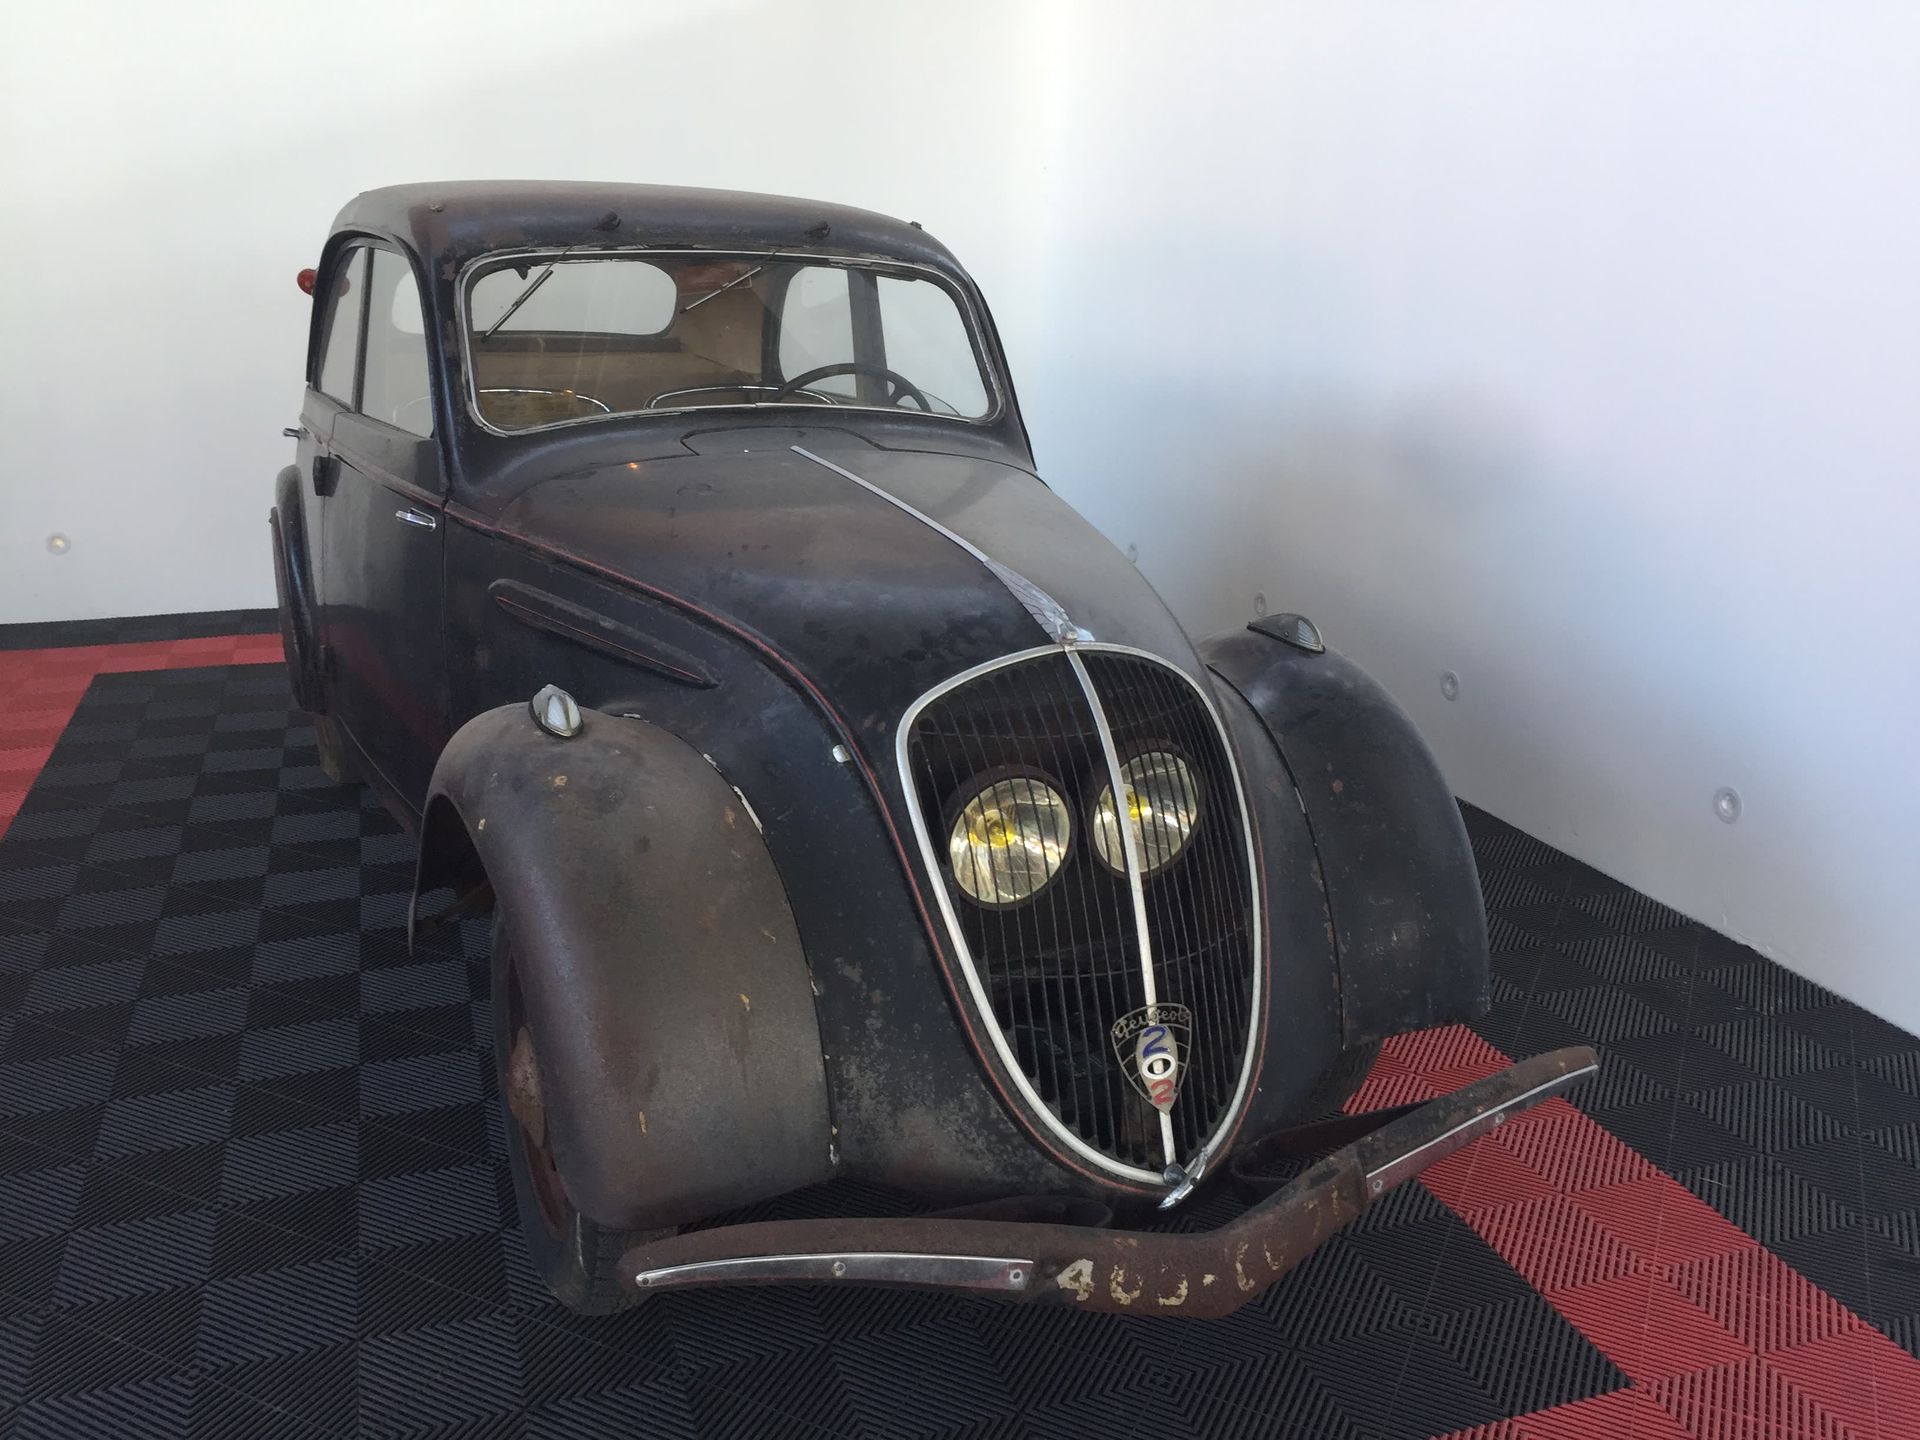 1938 Peugeot 202 53153公里

法国注册

序列号：438231

这辆车的原始状况很好，没有经过修复。

它是功能性的，只需要一个服务。